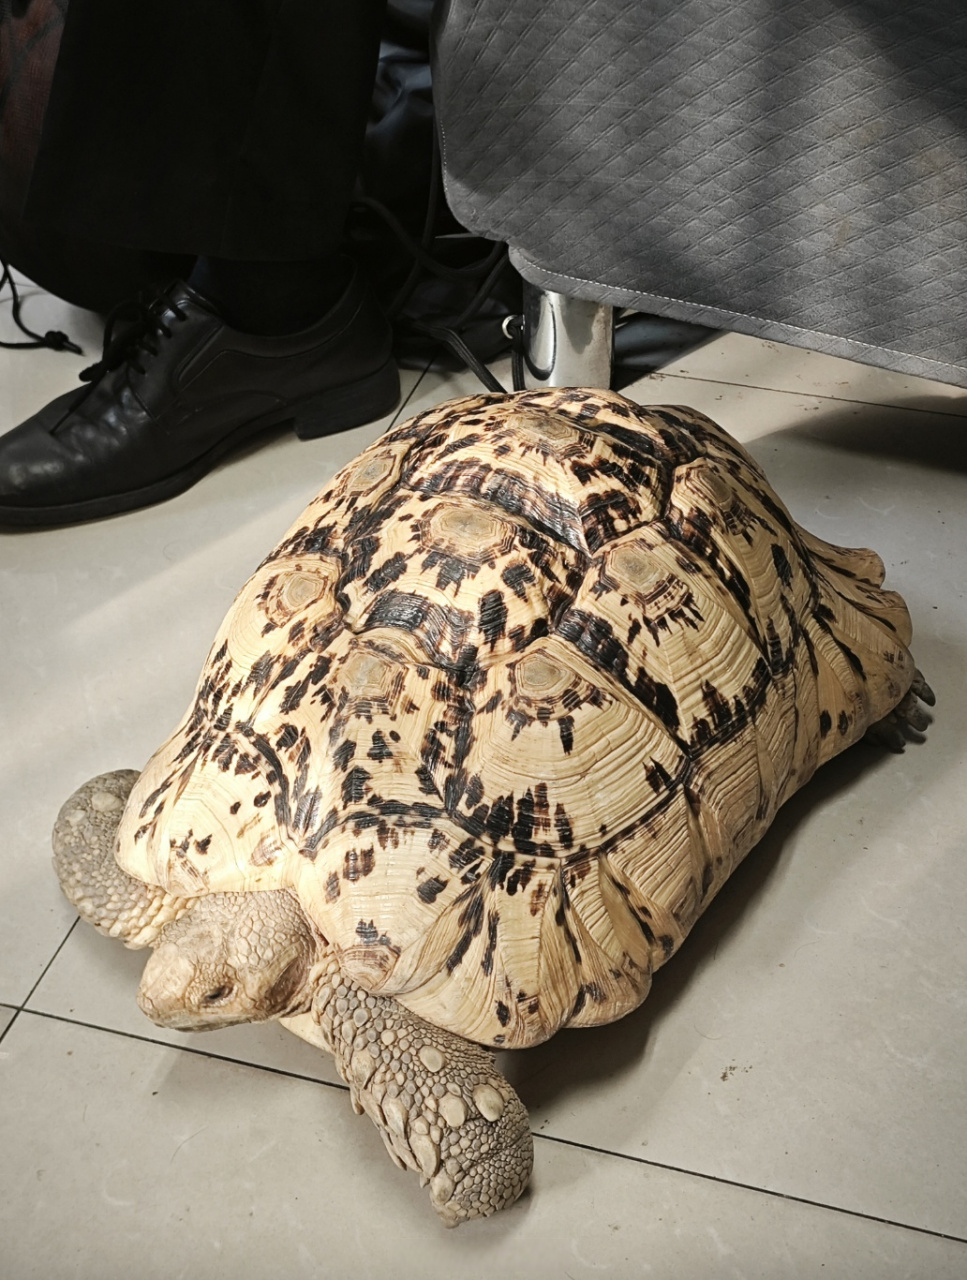 【上海一居民在小区闲逛捡到豹纹陆龟,专家:属于国家二级保护动物】7